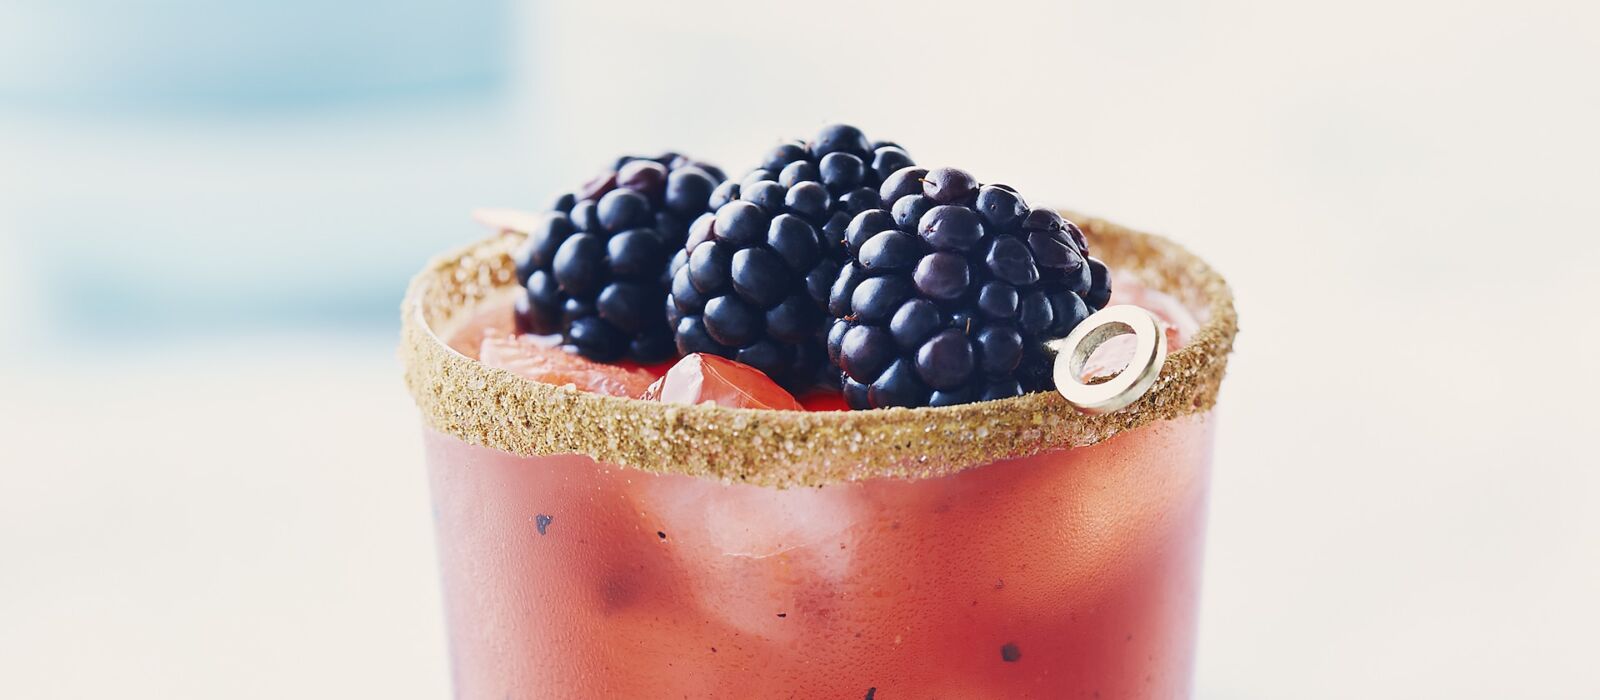 Caesar drink with blackberry garnish